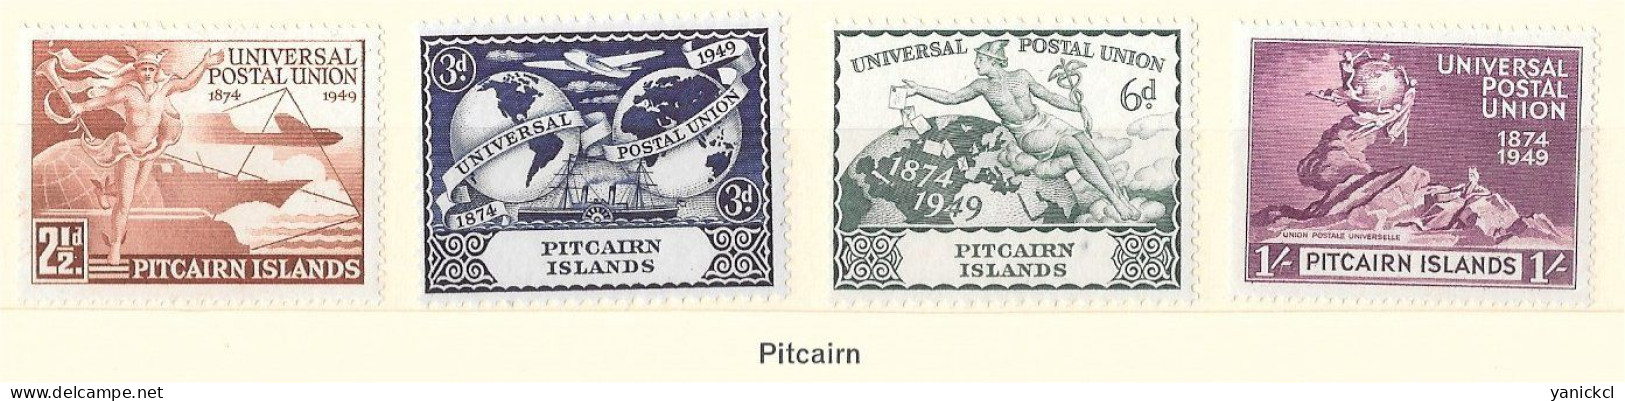 U.P.U. - Pitcairn - 75e Anniversaire De L' U.P.U. - (4 Valeurs) - 1949 - Y & T N° 13 à 16** - Pitcairn Islands